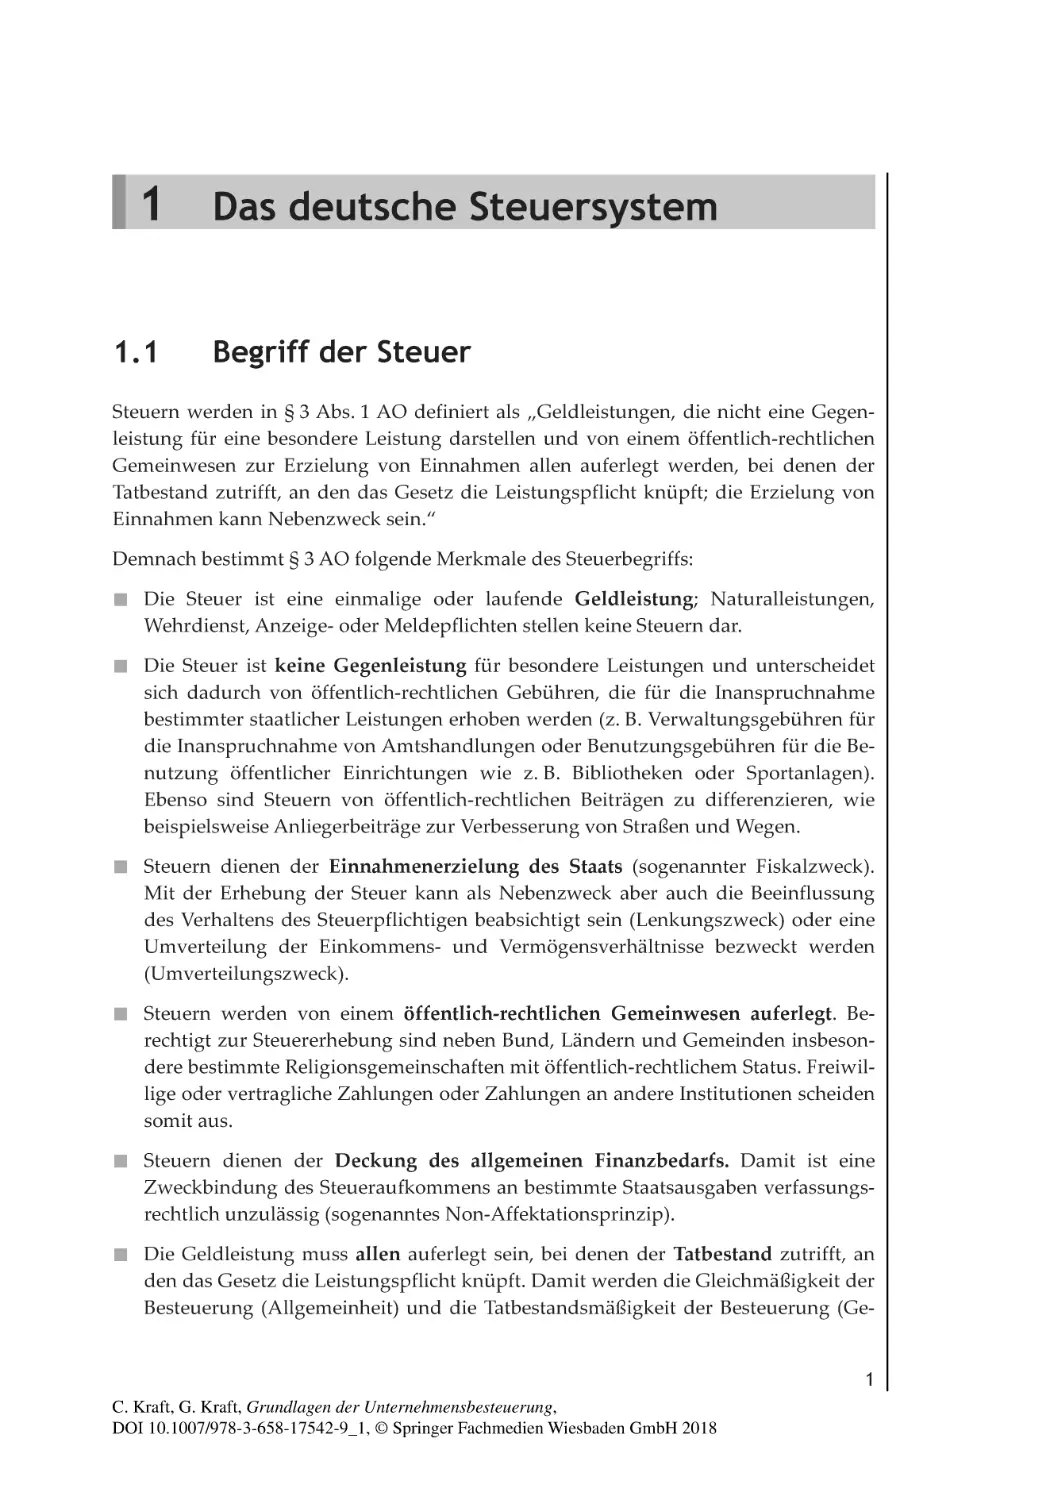 1
Das deutsche Steuersystem
1.1 Begriff der Steuer